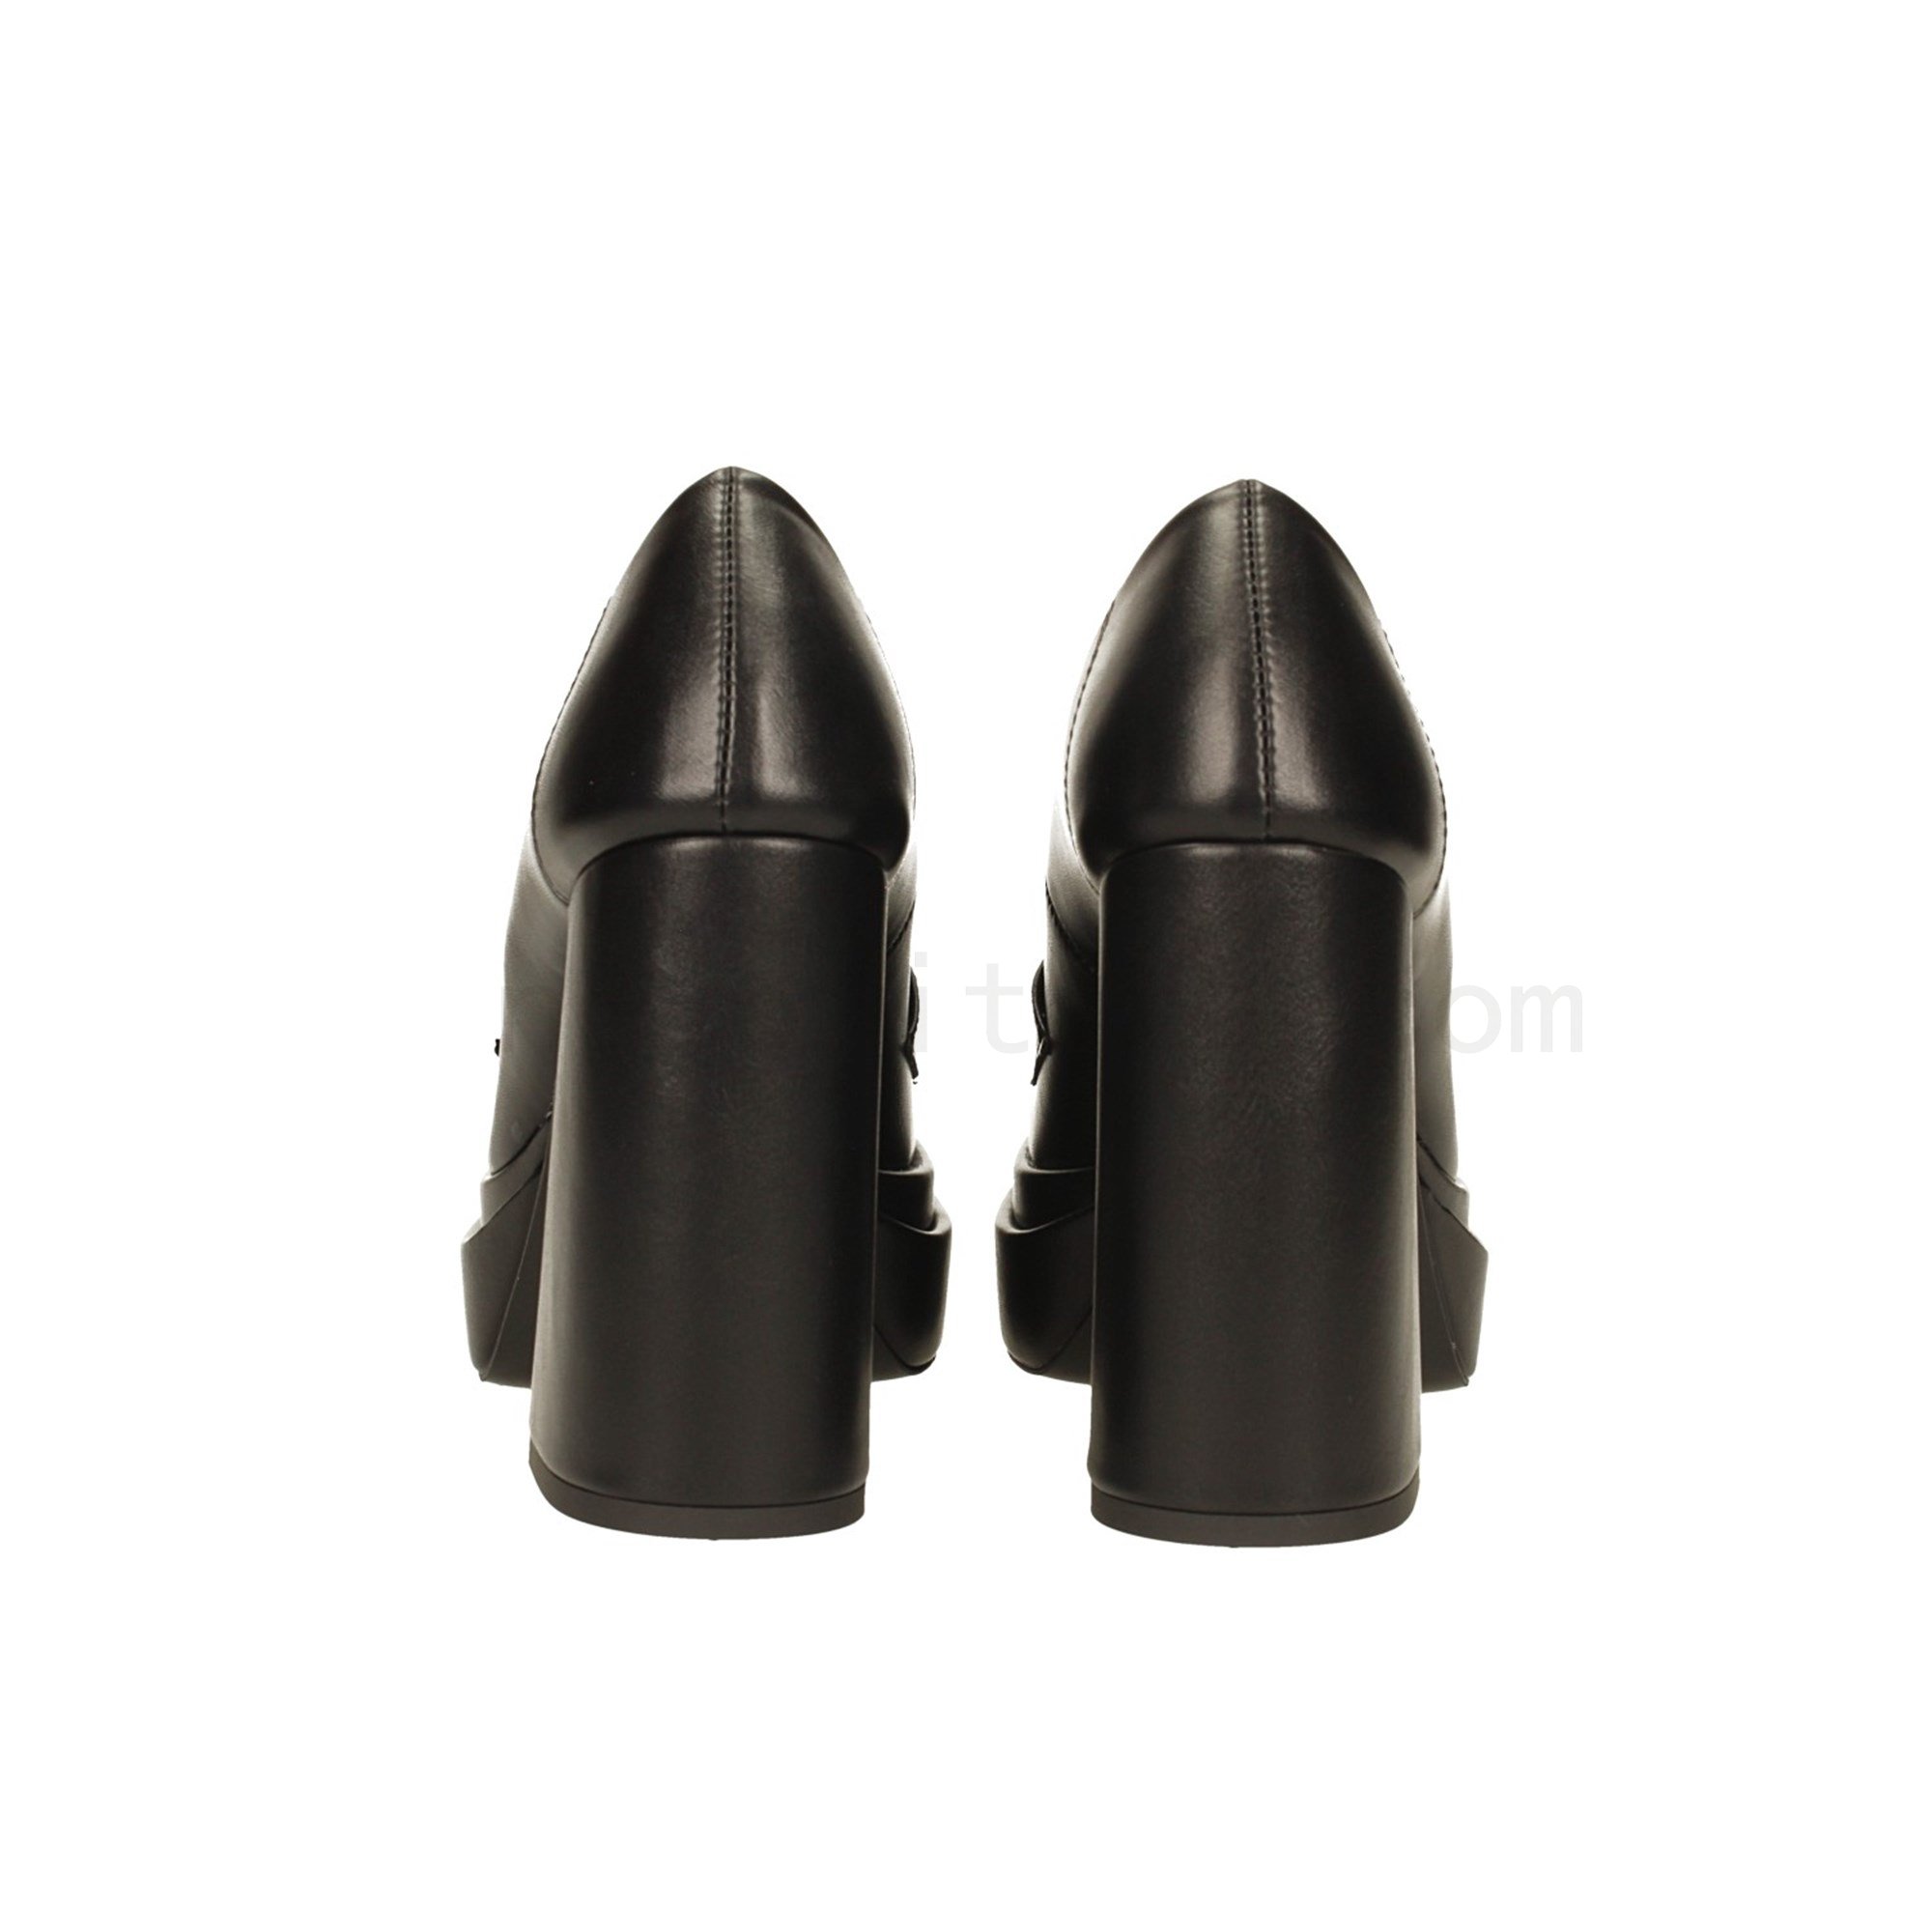 Economiche Pumps mocassino nere con tacco a colonna alto 10,5cm, Made in Italy Outlet